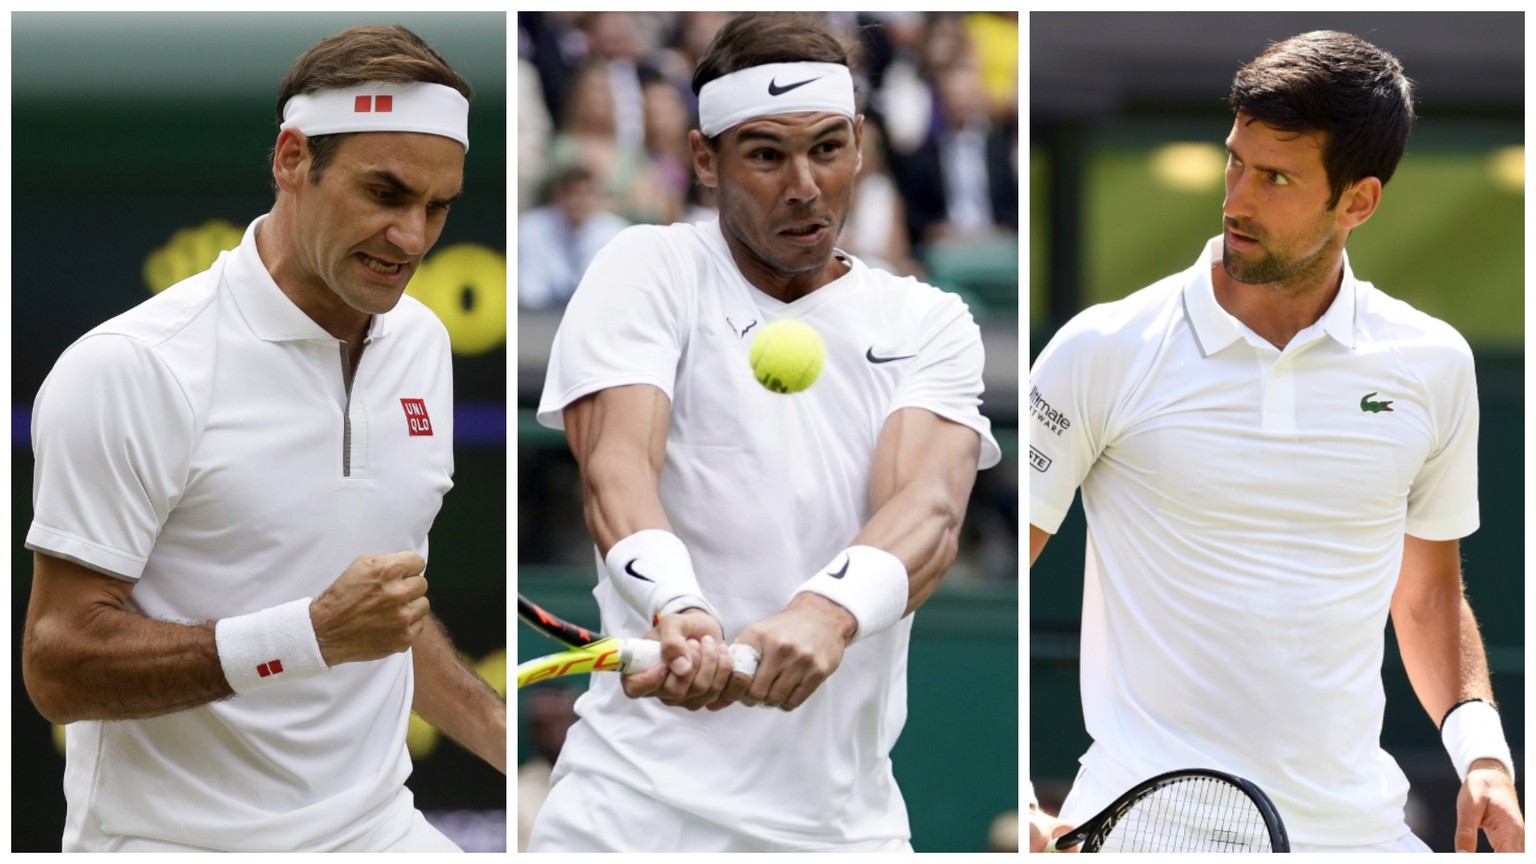 Auch Mitte 2019 dominieren immer noch die «alten» Herren Federer, Nadal und Djokovic.